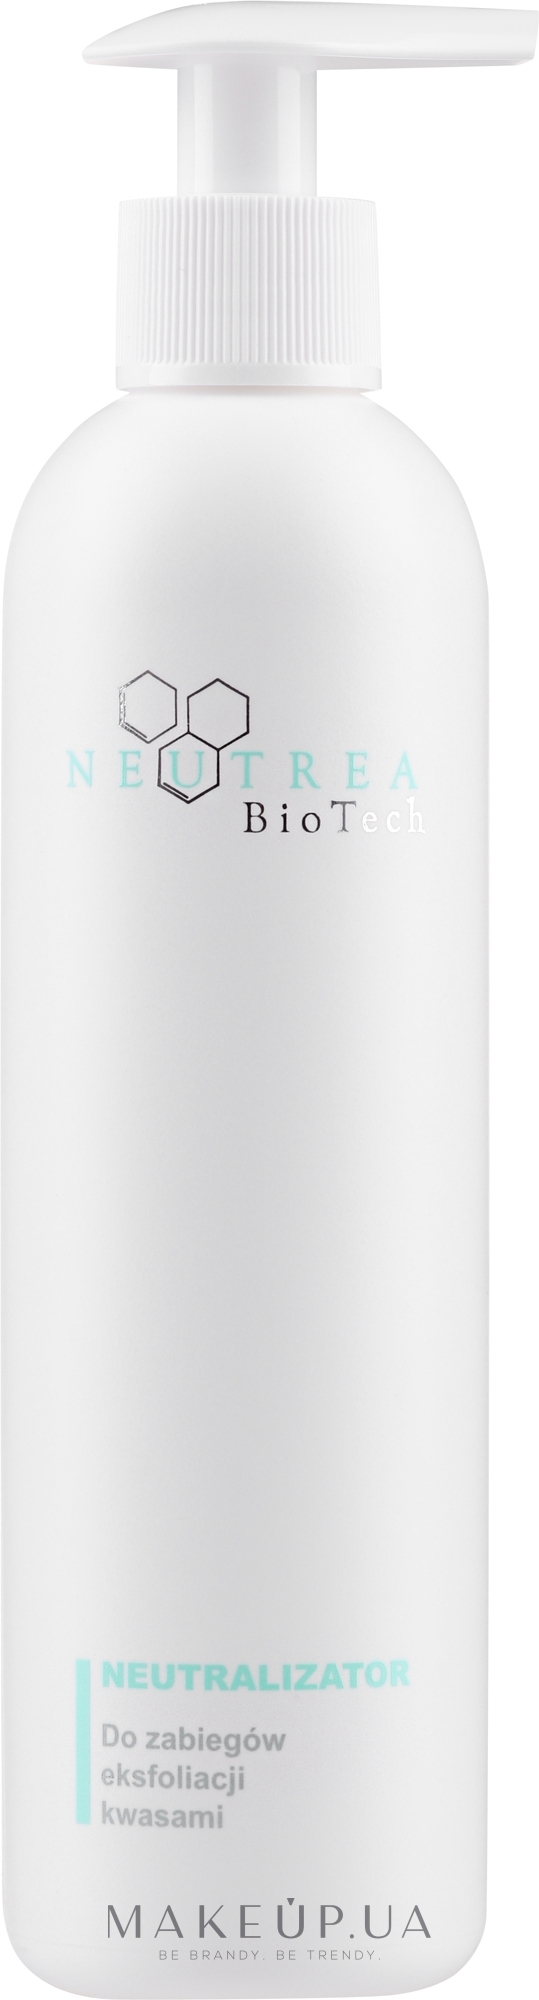 Нейтралізатор для кислотного пілінгу - Neutrea BioTech Peel Neutralizer — фото 250ml